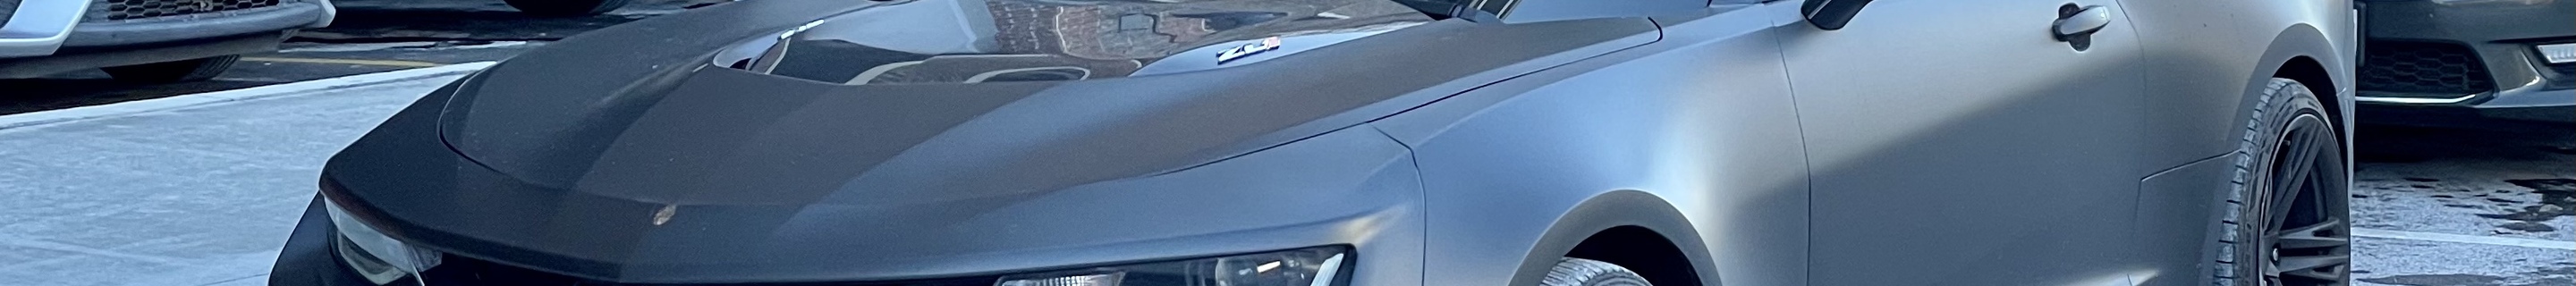 Chevrolet Camaro ZL1 1LE 2017